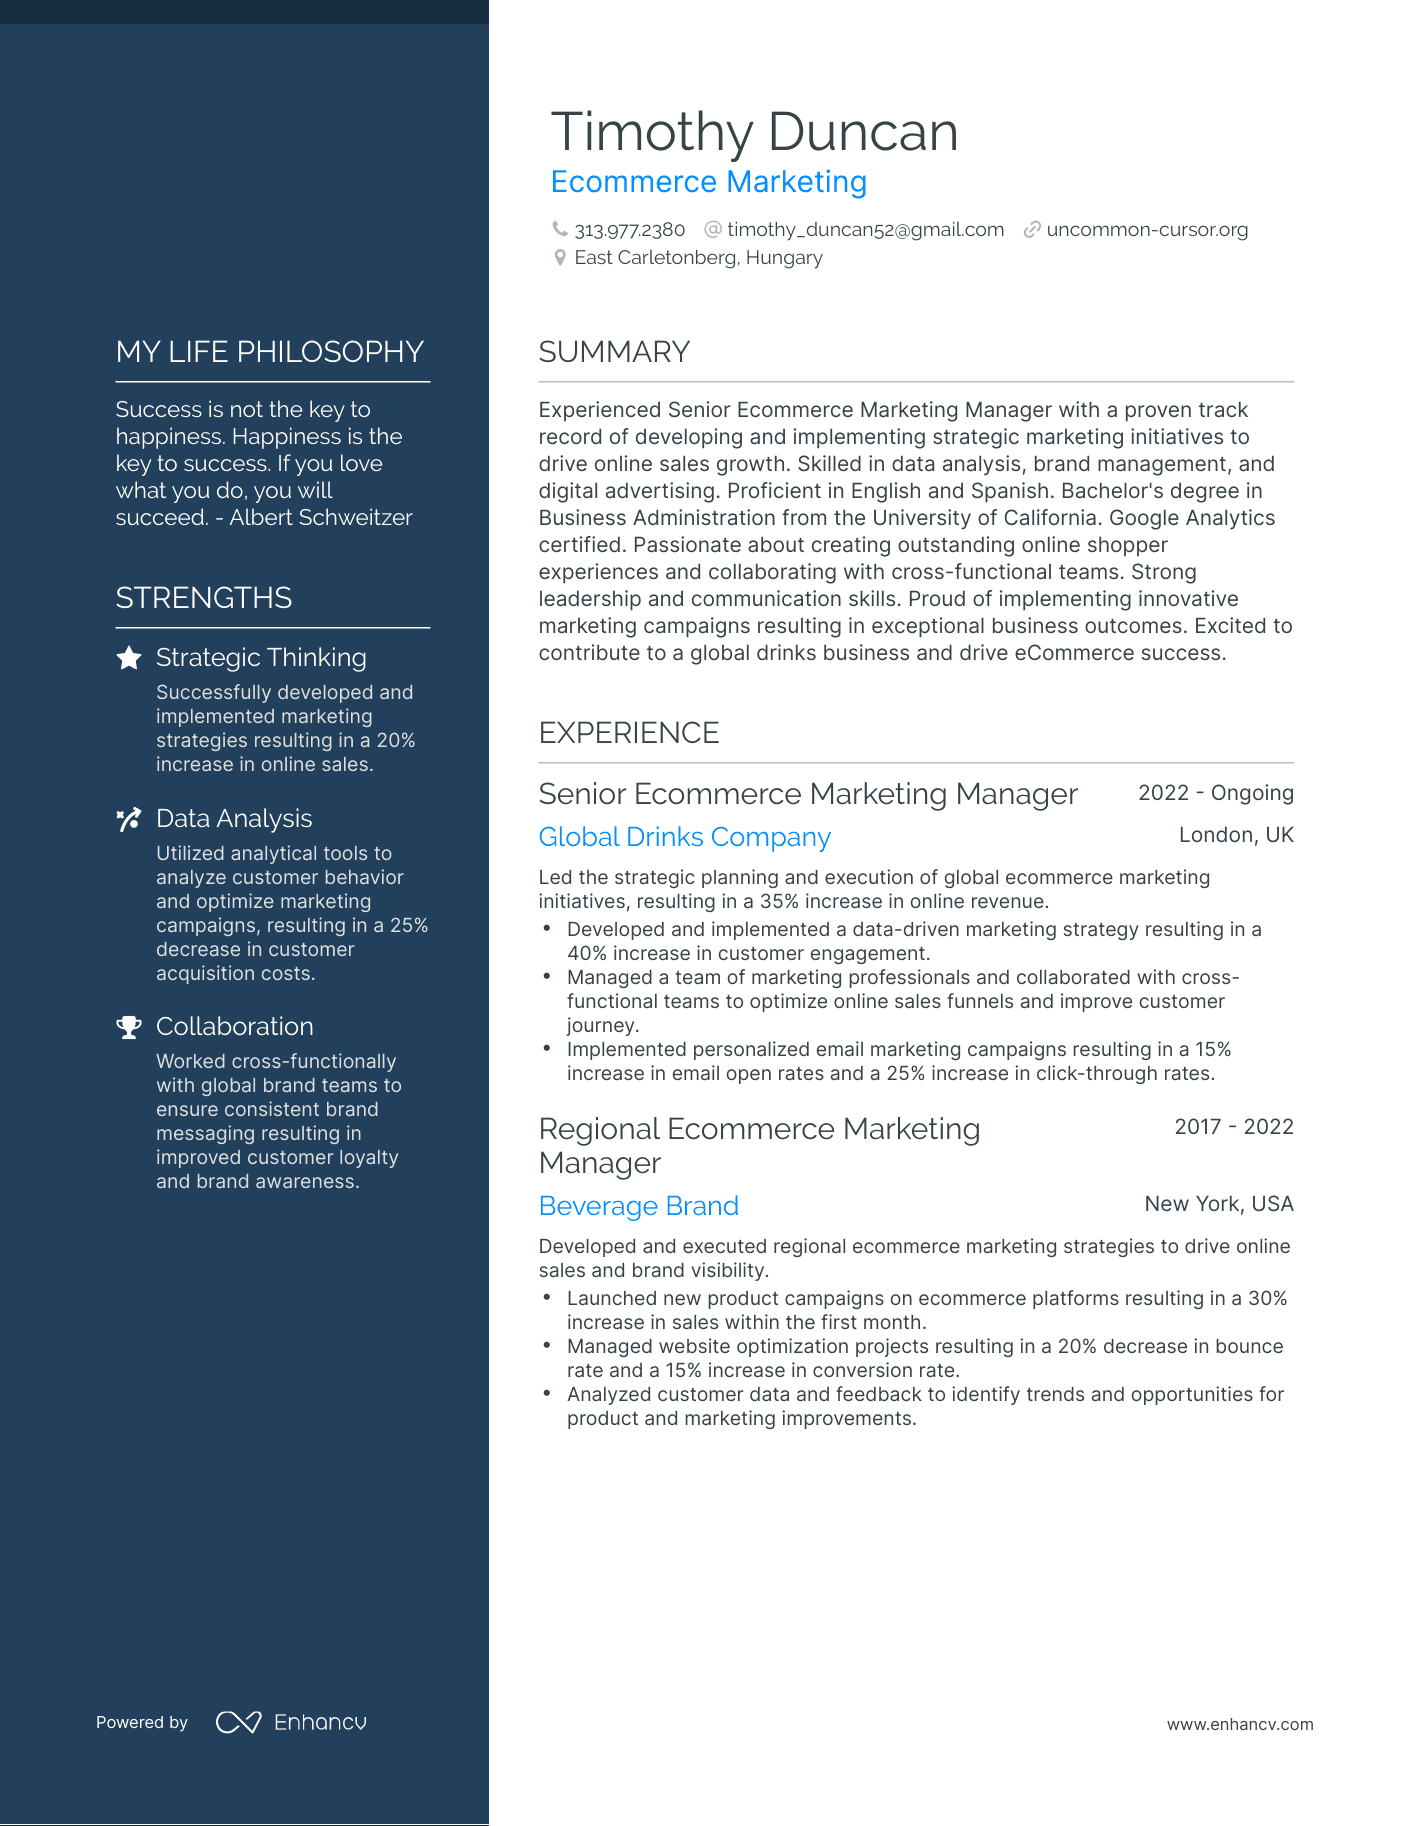 Ecommerce Marketing resume example